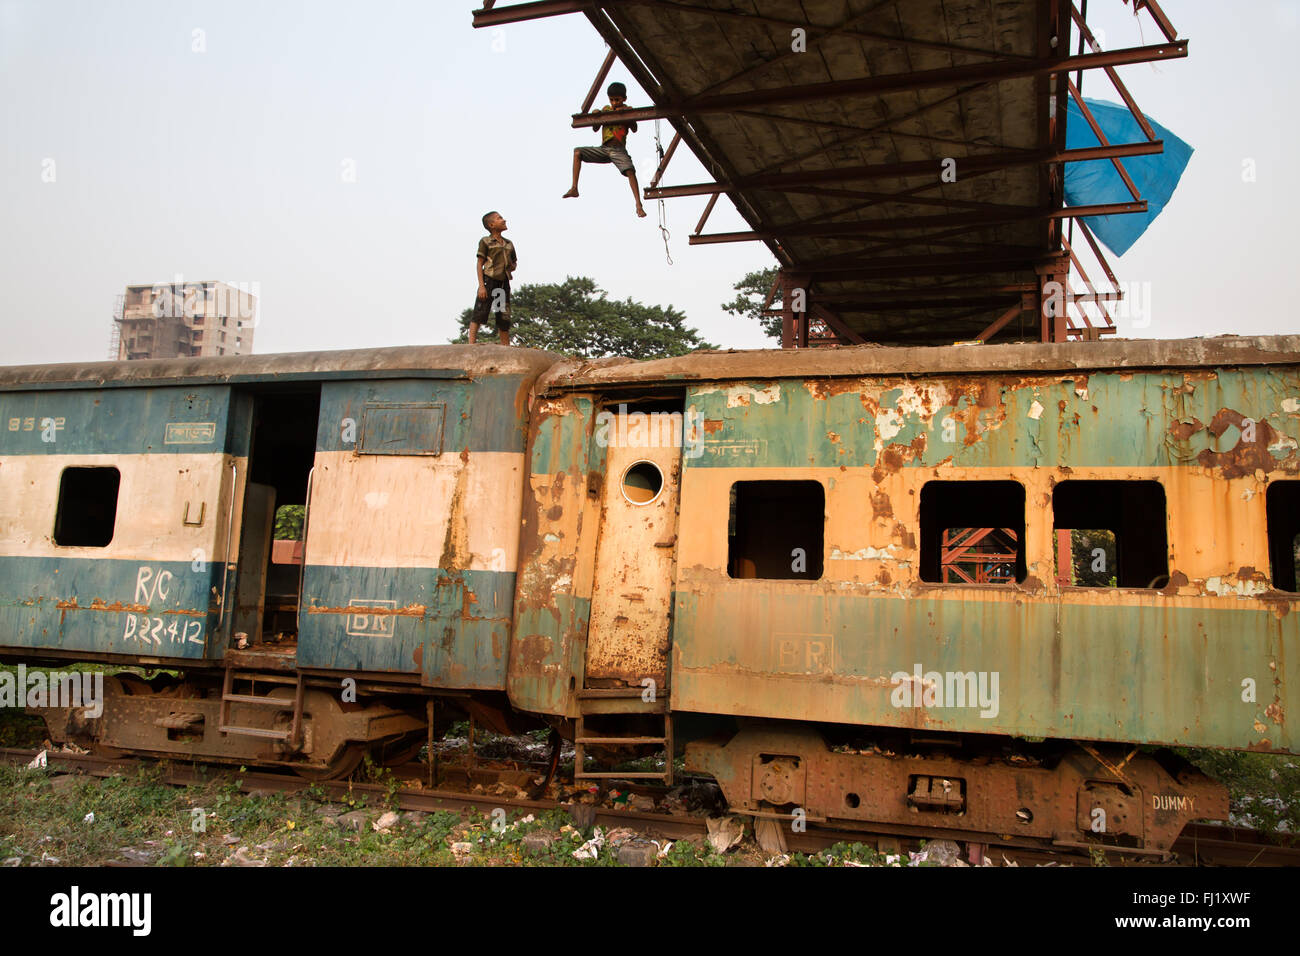 Bambini che giocano su un treno abbandonati auto nei pressi di Dhaka stazione ferroviaria , Bangladesh Foto Stock